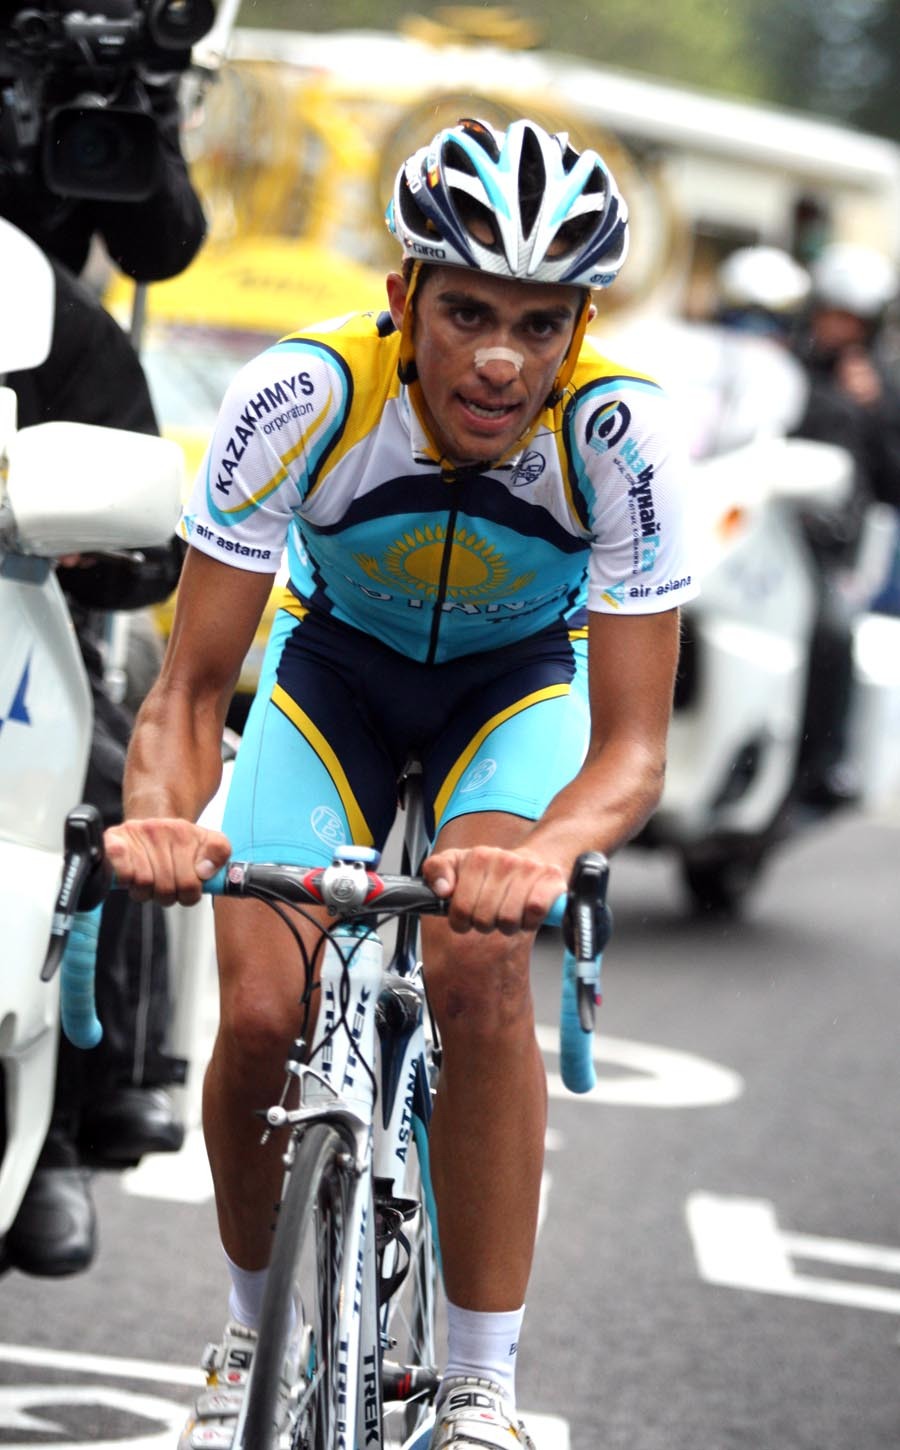 Vuelta a Espana: Alberto Contador wygrał 17. etap i został nowym liderem!